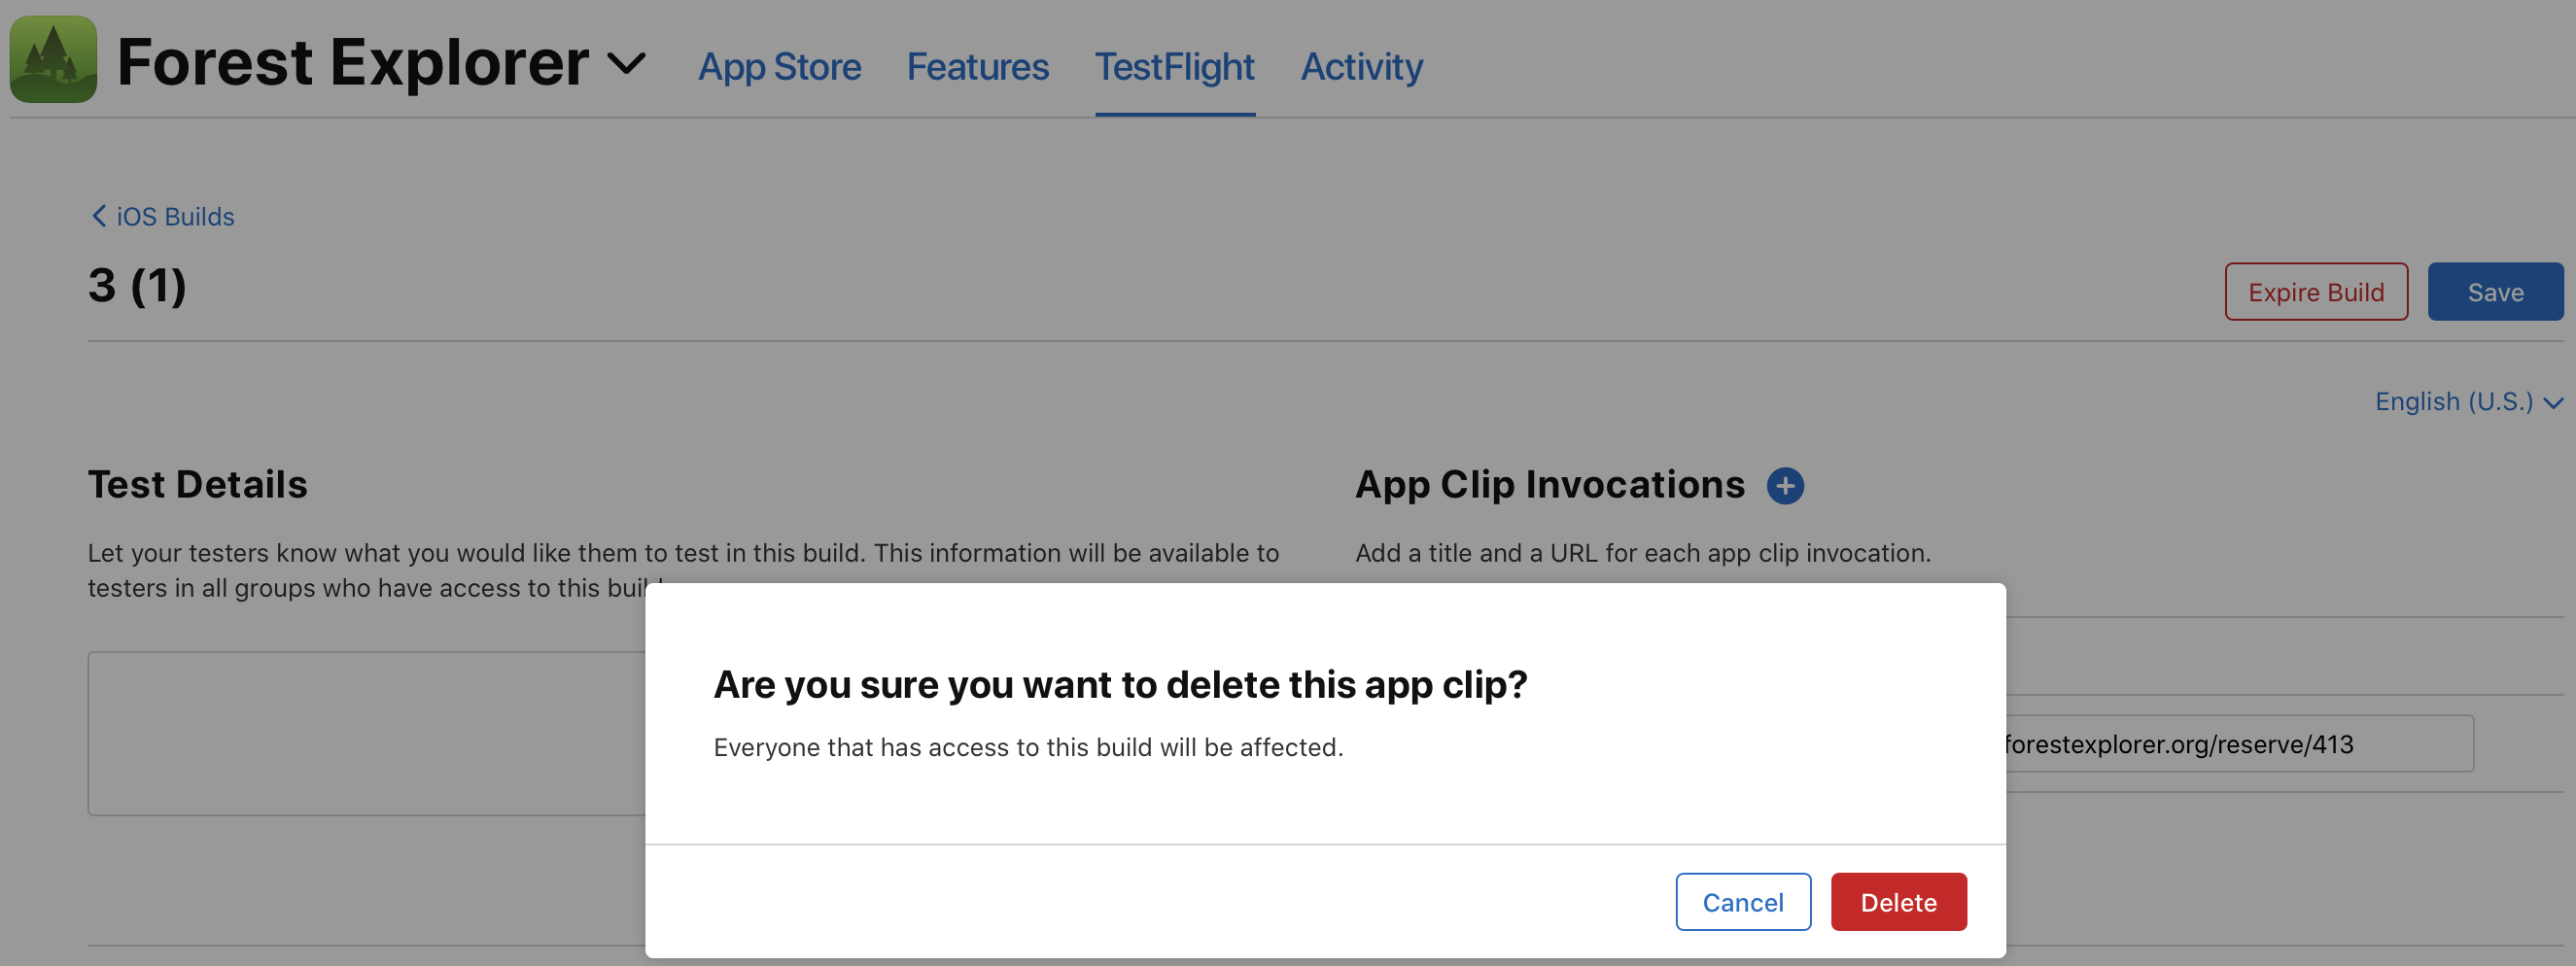 App clip delete confirmation